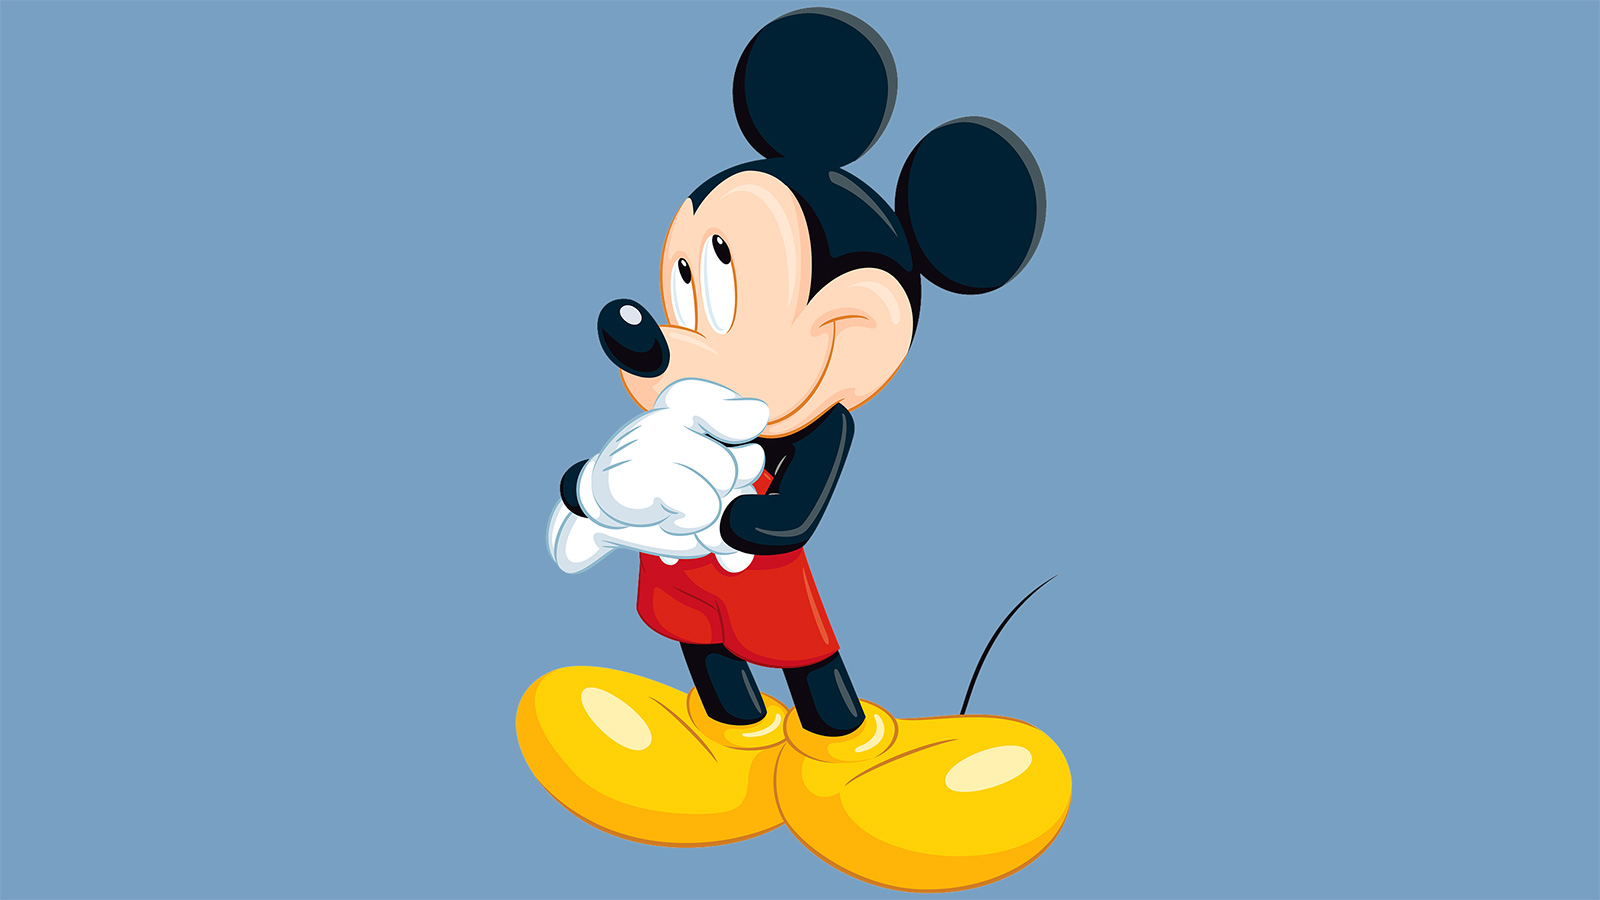 chuột mickey - Hình ảnh hoạt hình chuột Mickey thúc đẩy sự phổ biến của  Disney png tải về - Miễn phí trong suốt Chuột Mickey png Tải về.